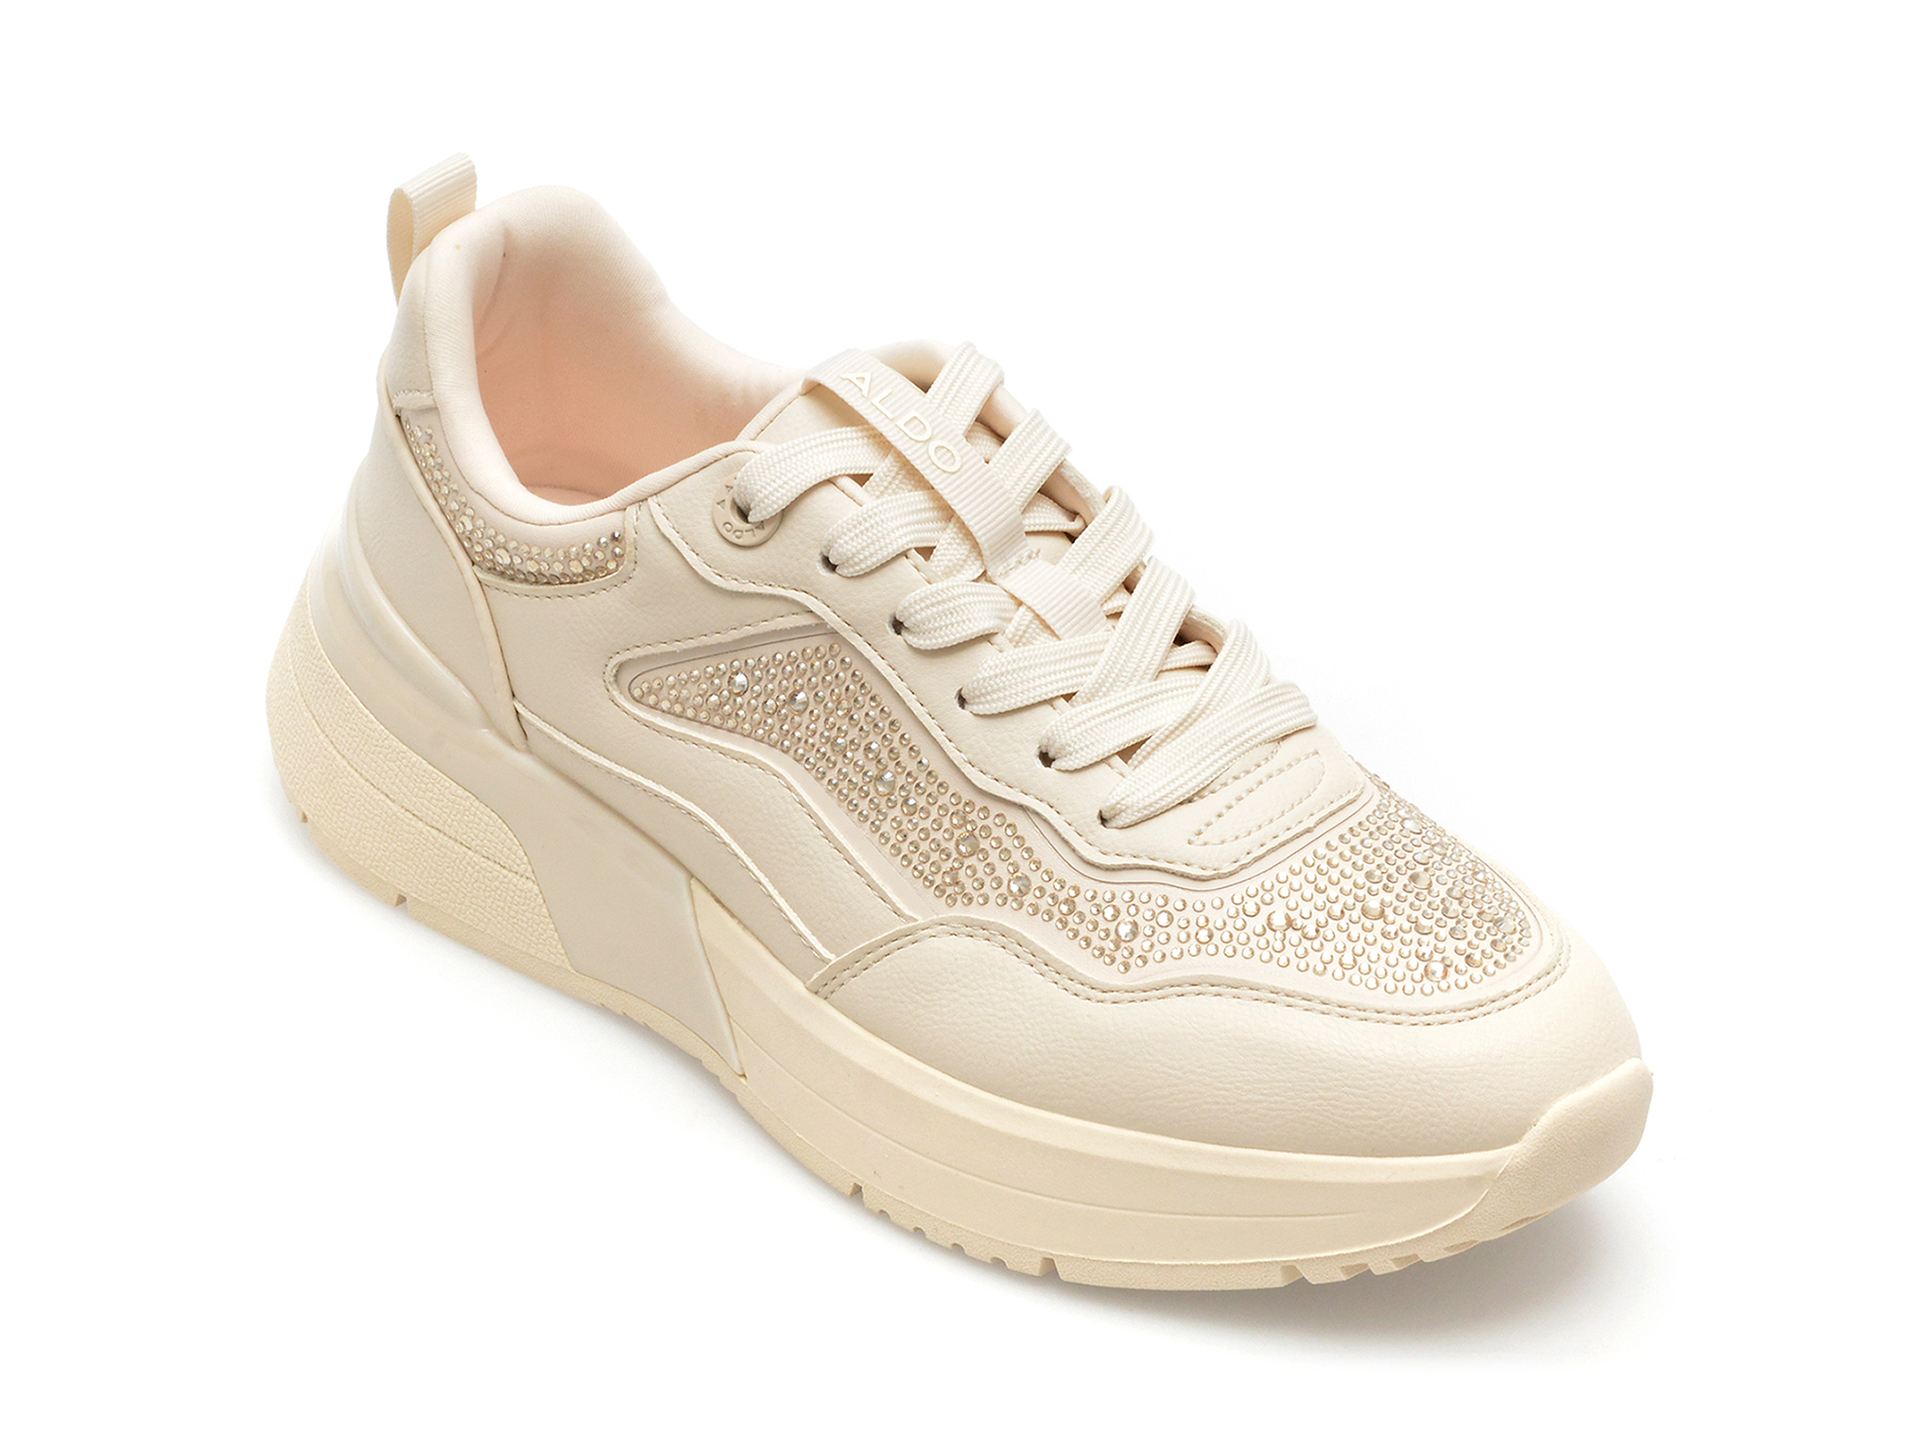 Pantofi ALDO albi, DYLANA981, din piele ecologica